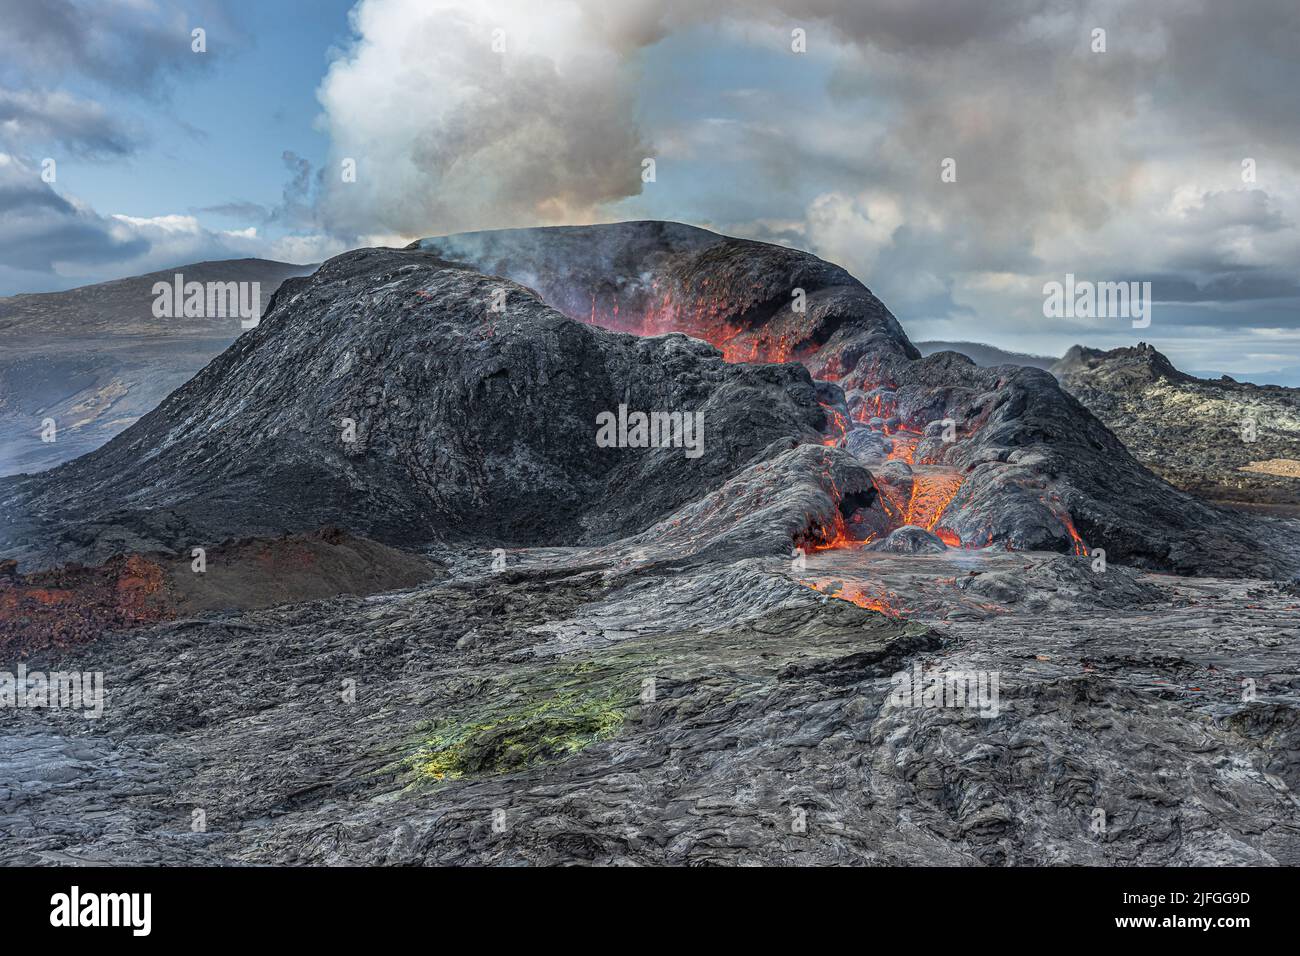 volcan après l'éruption. Paysage volcanique sur la péninsule de Reykjanes. Volcan actif en Islande sans écoulement de lave. Magma refroidi autour du cratère Banque D'Images